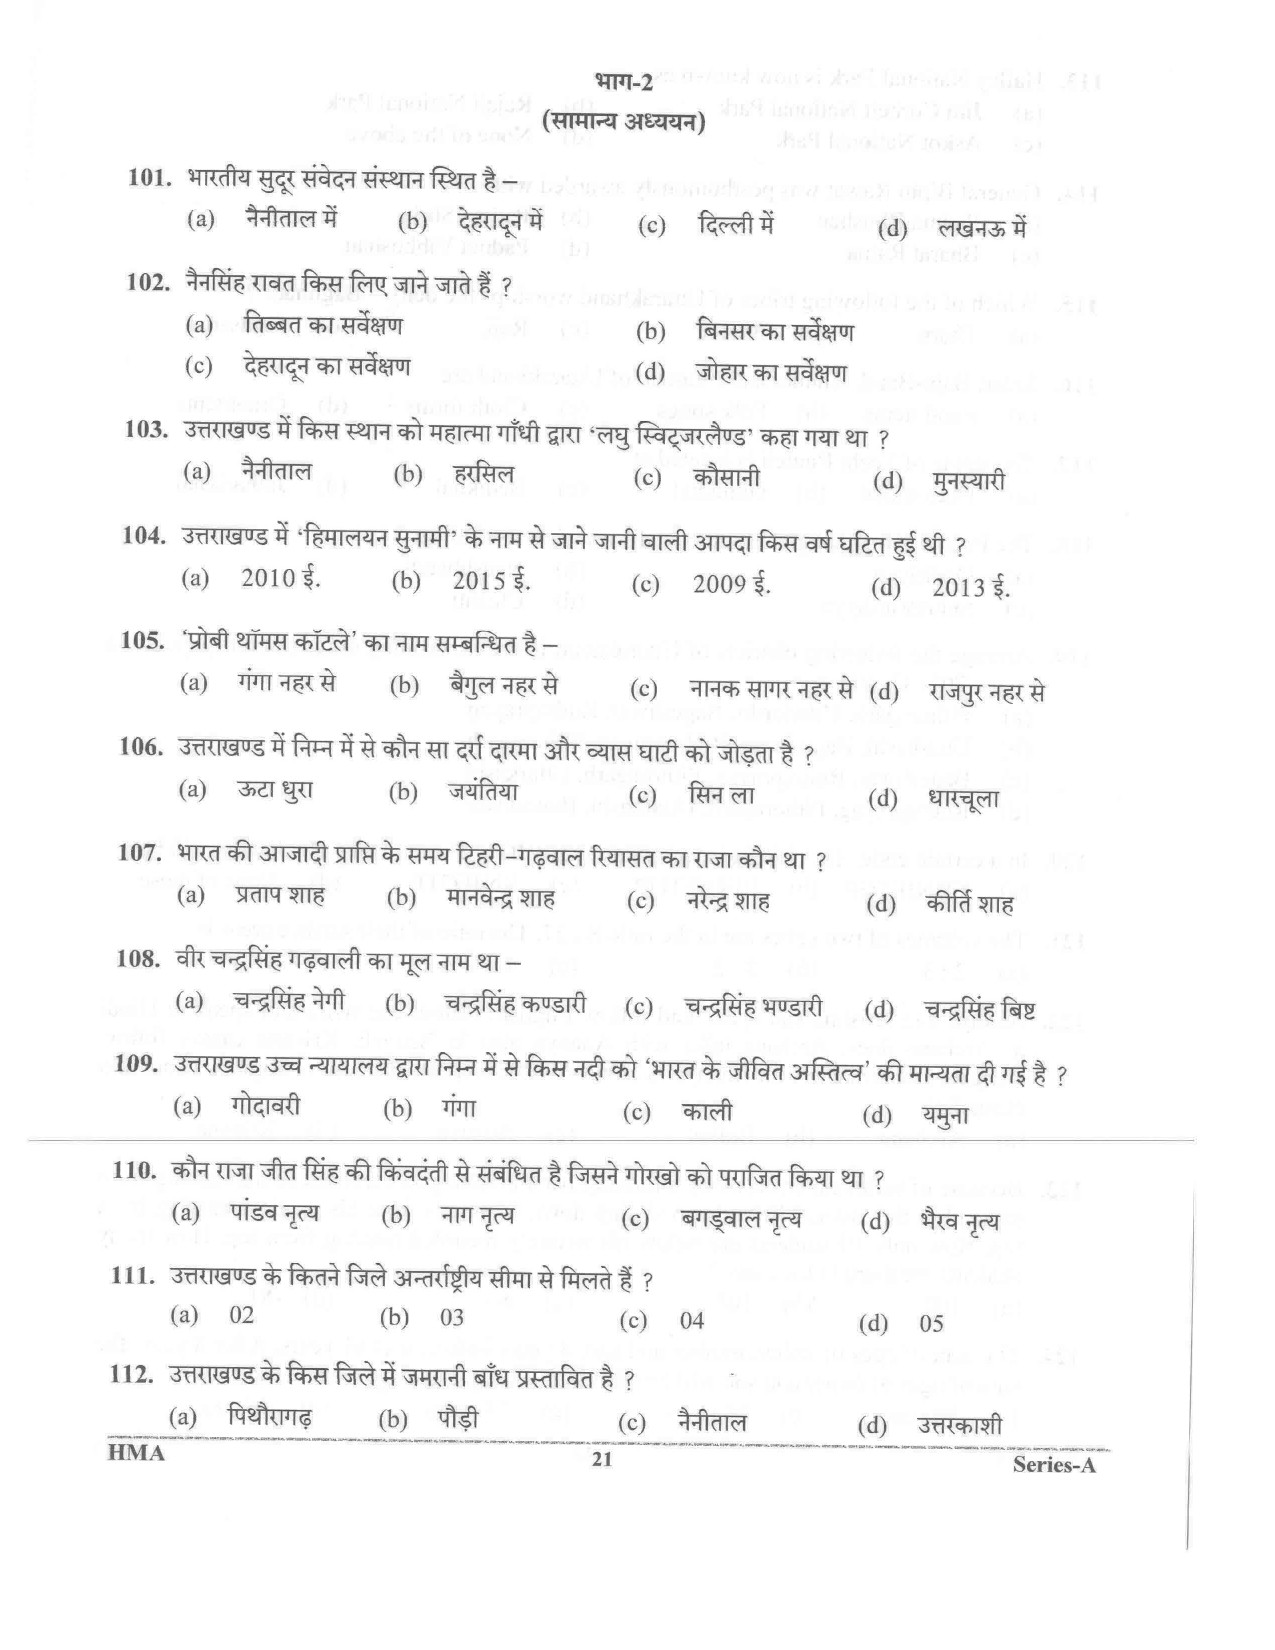 UKPSC Vyawasthapak Examination Question Paper 2021 20